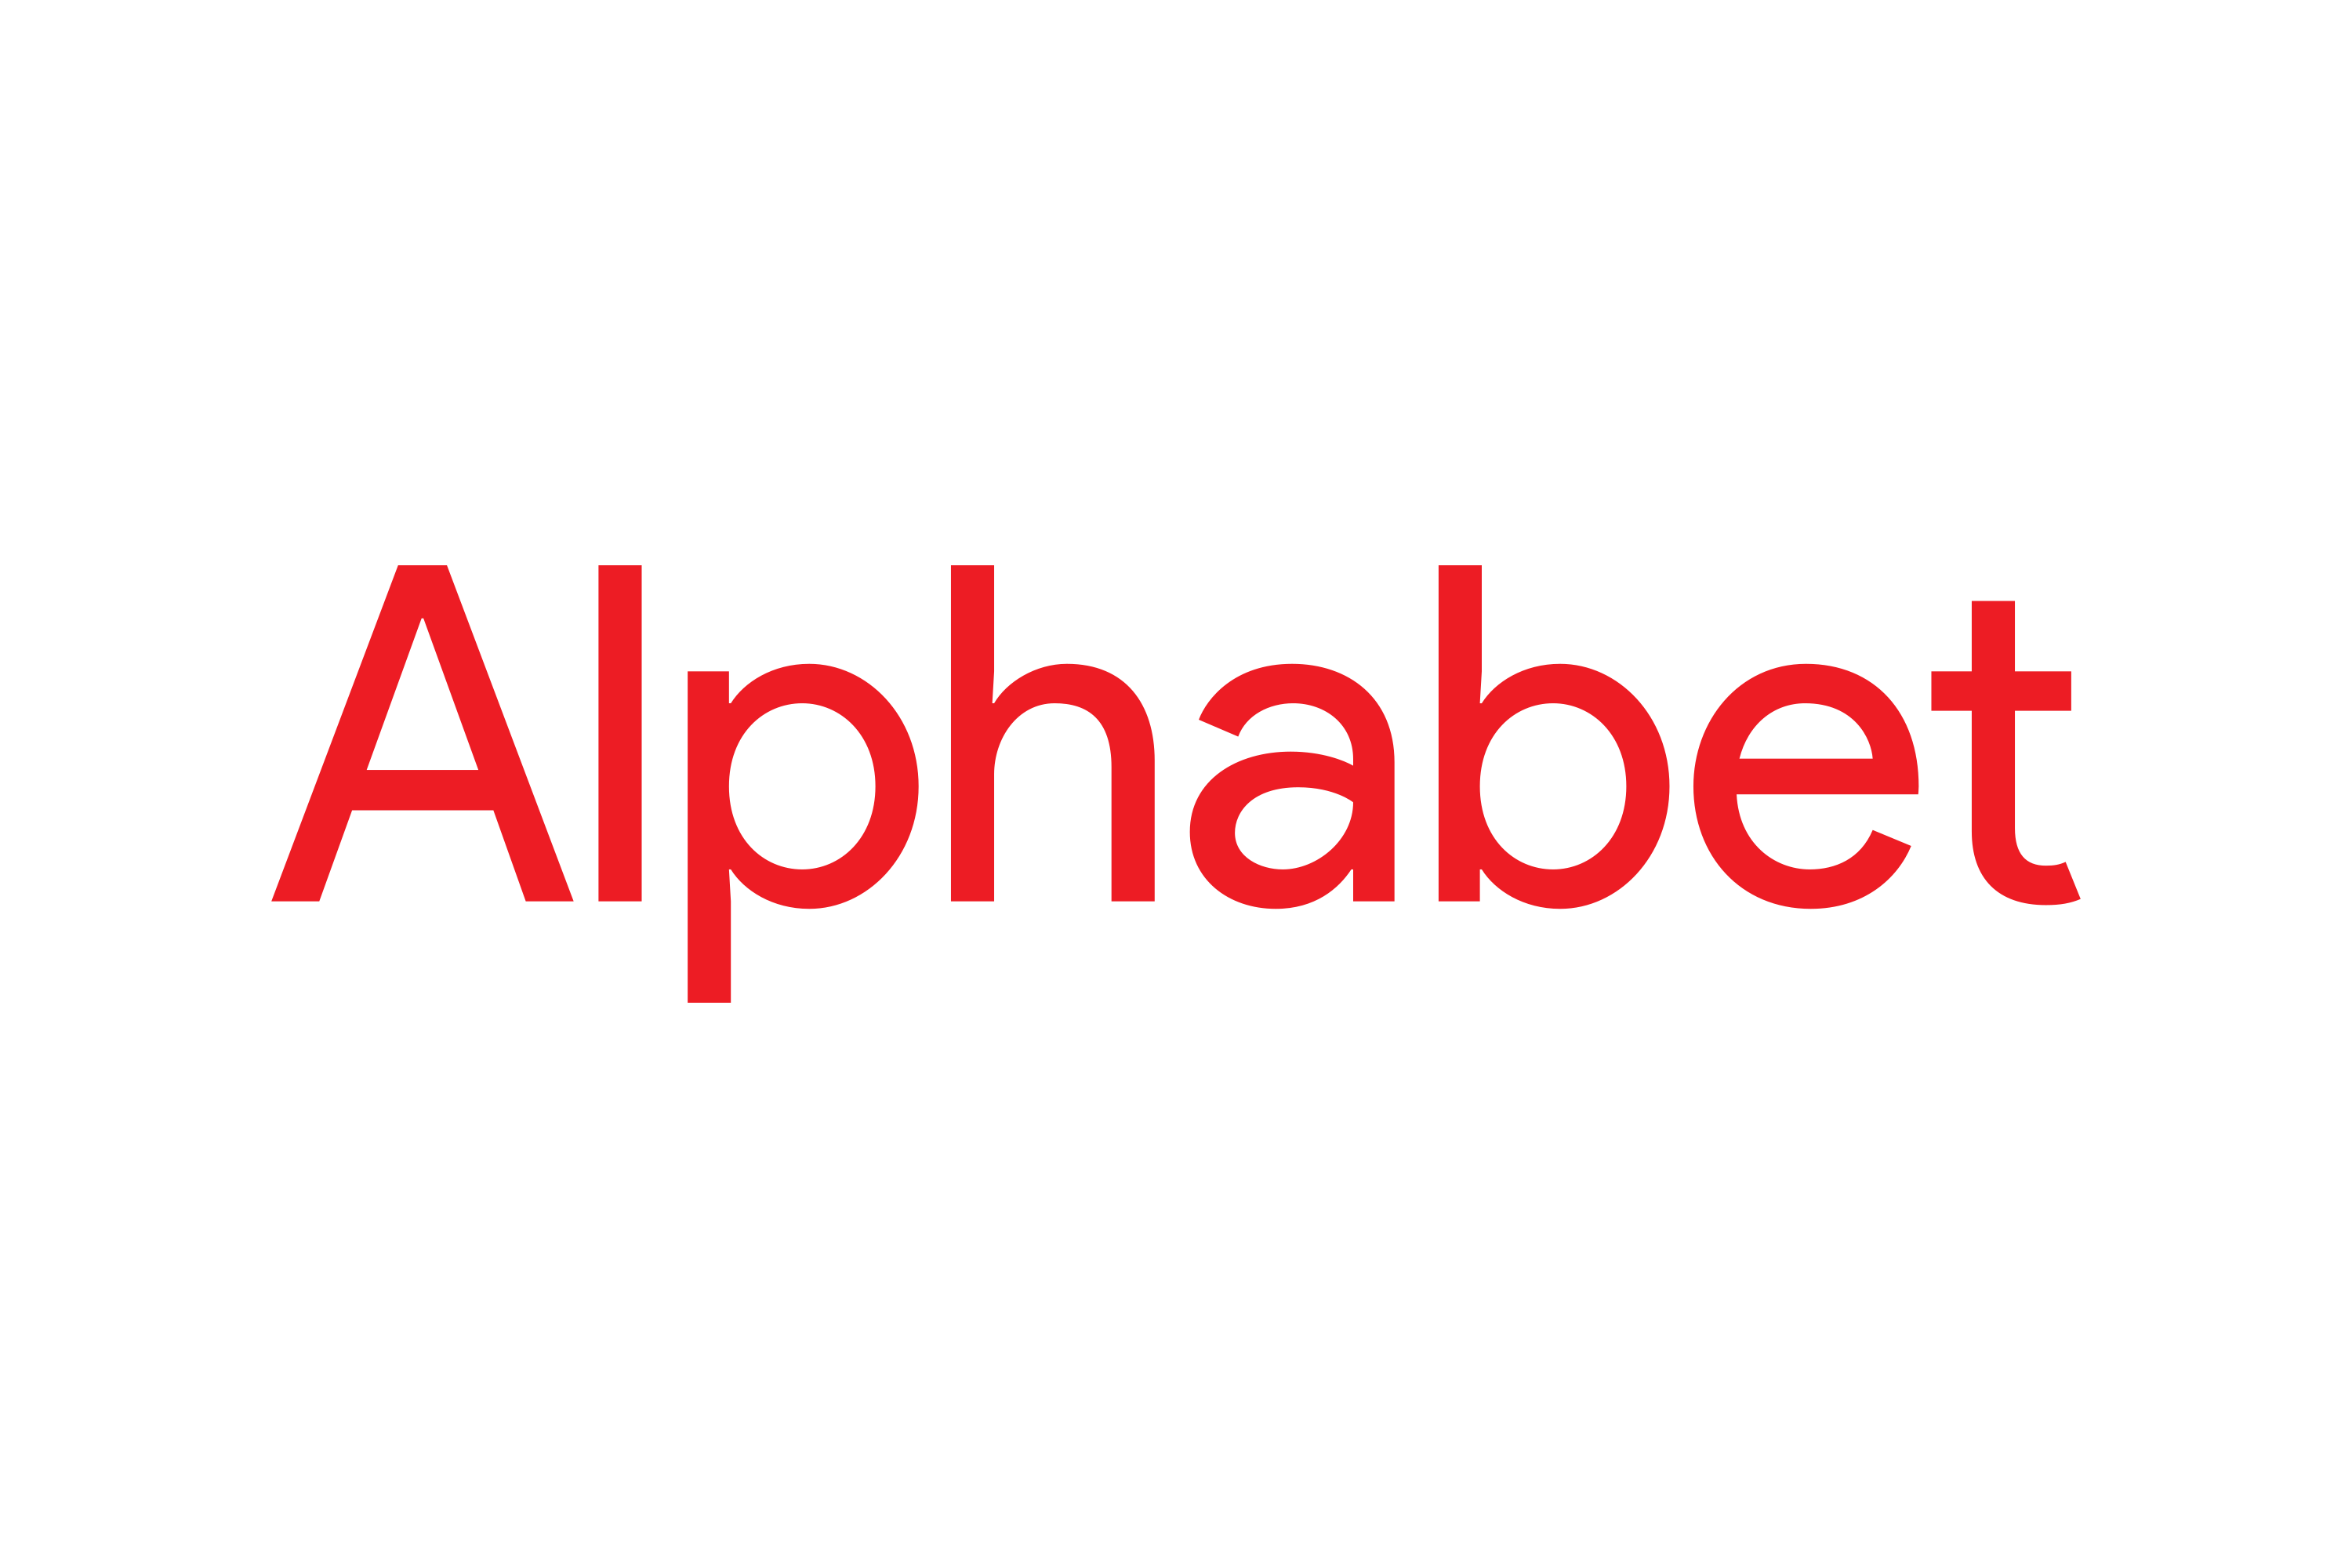 Alphabet Inc. Logo